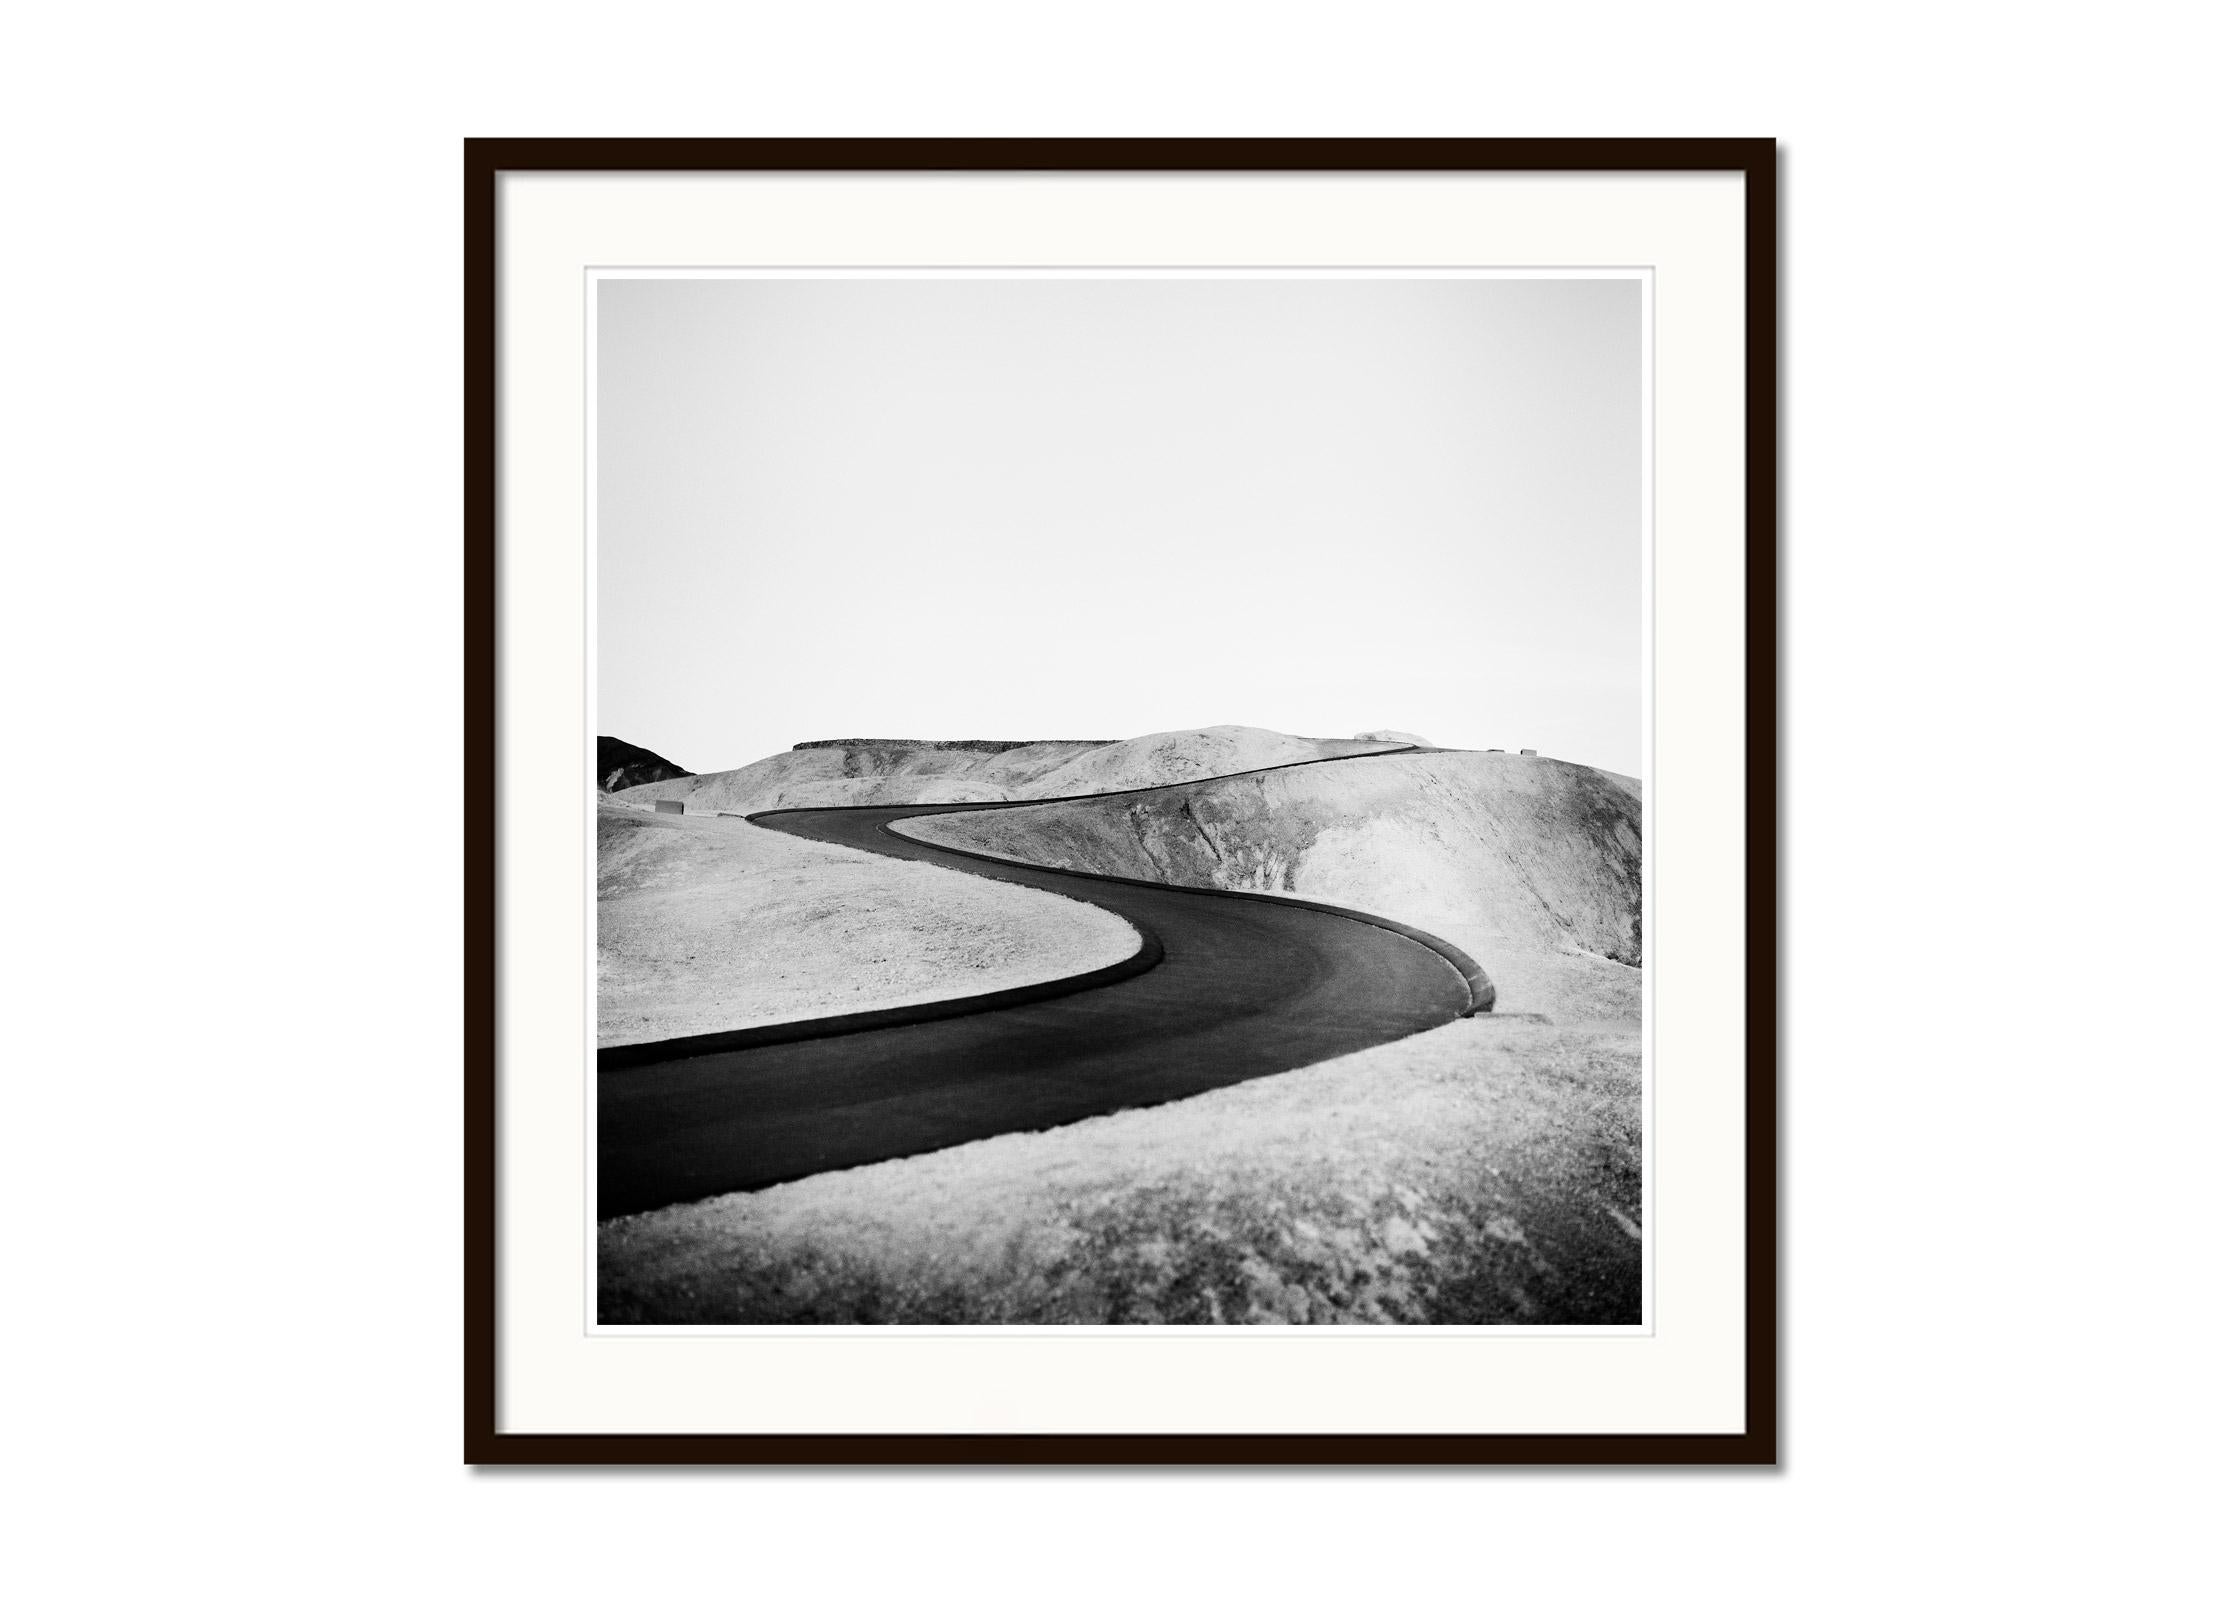 S Curve Shaped Road, Death Valley, Kalifornien, USA, Schwarz-Weiß-Landschaft (Grau), Black and White Photograph, von Gerald Berghammer